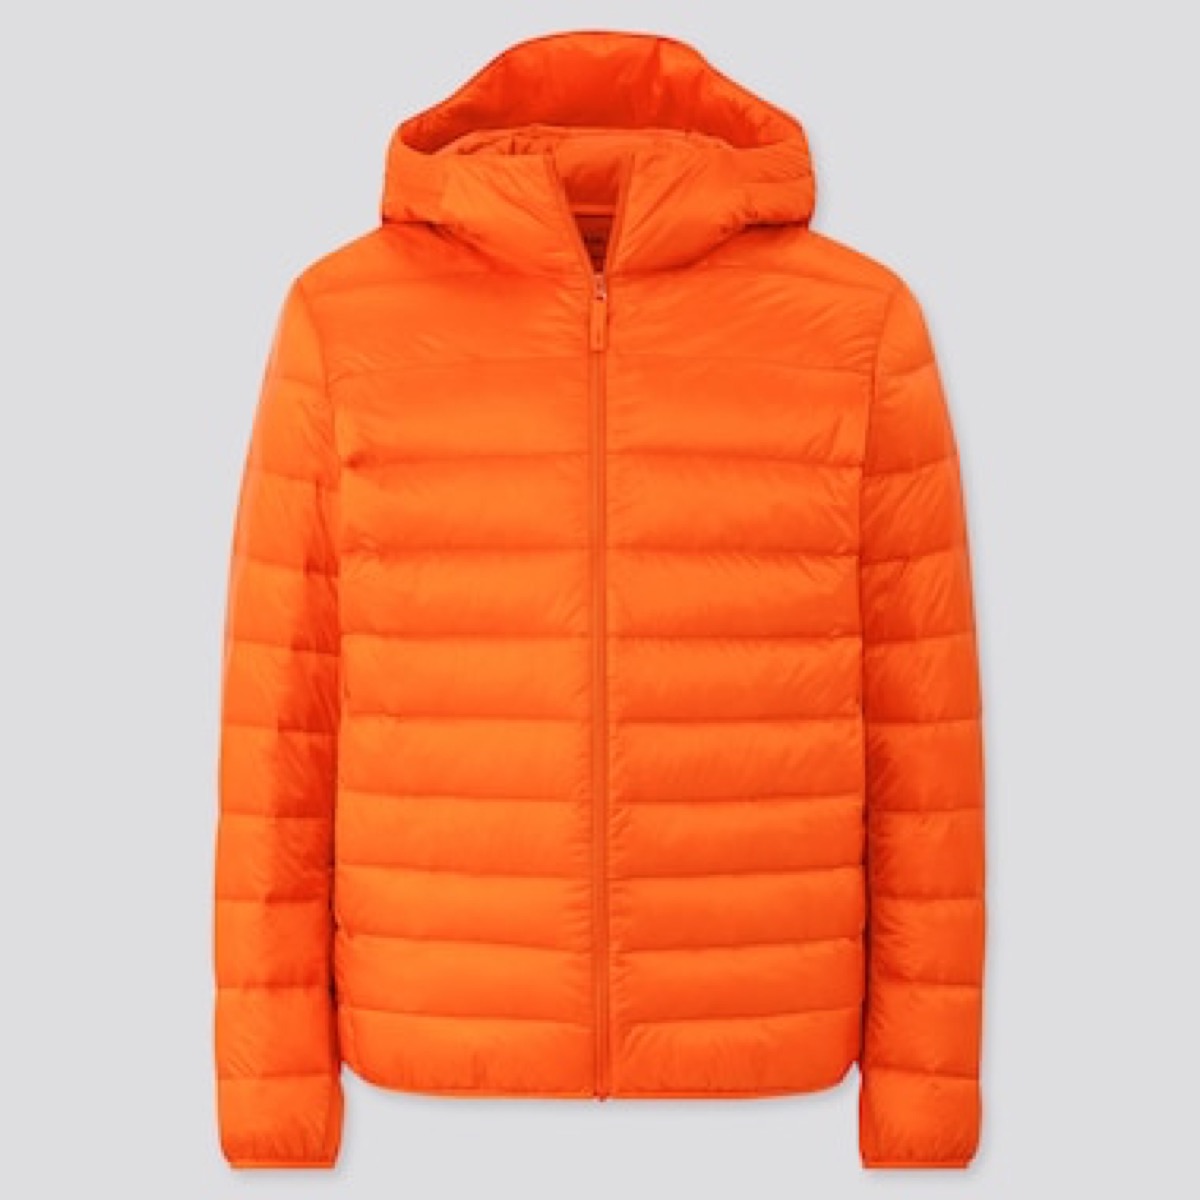 Bright orange down jacket